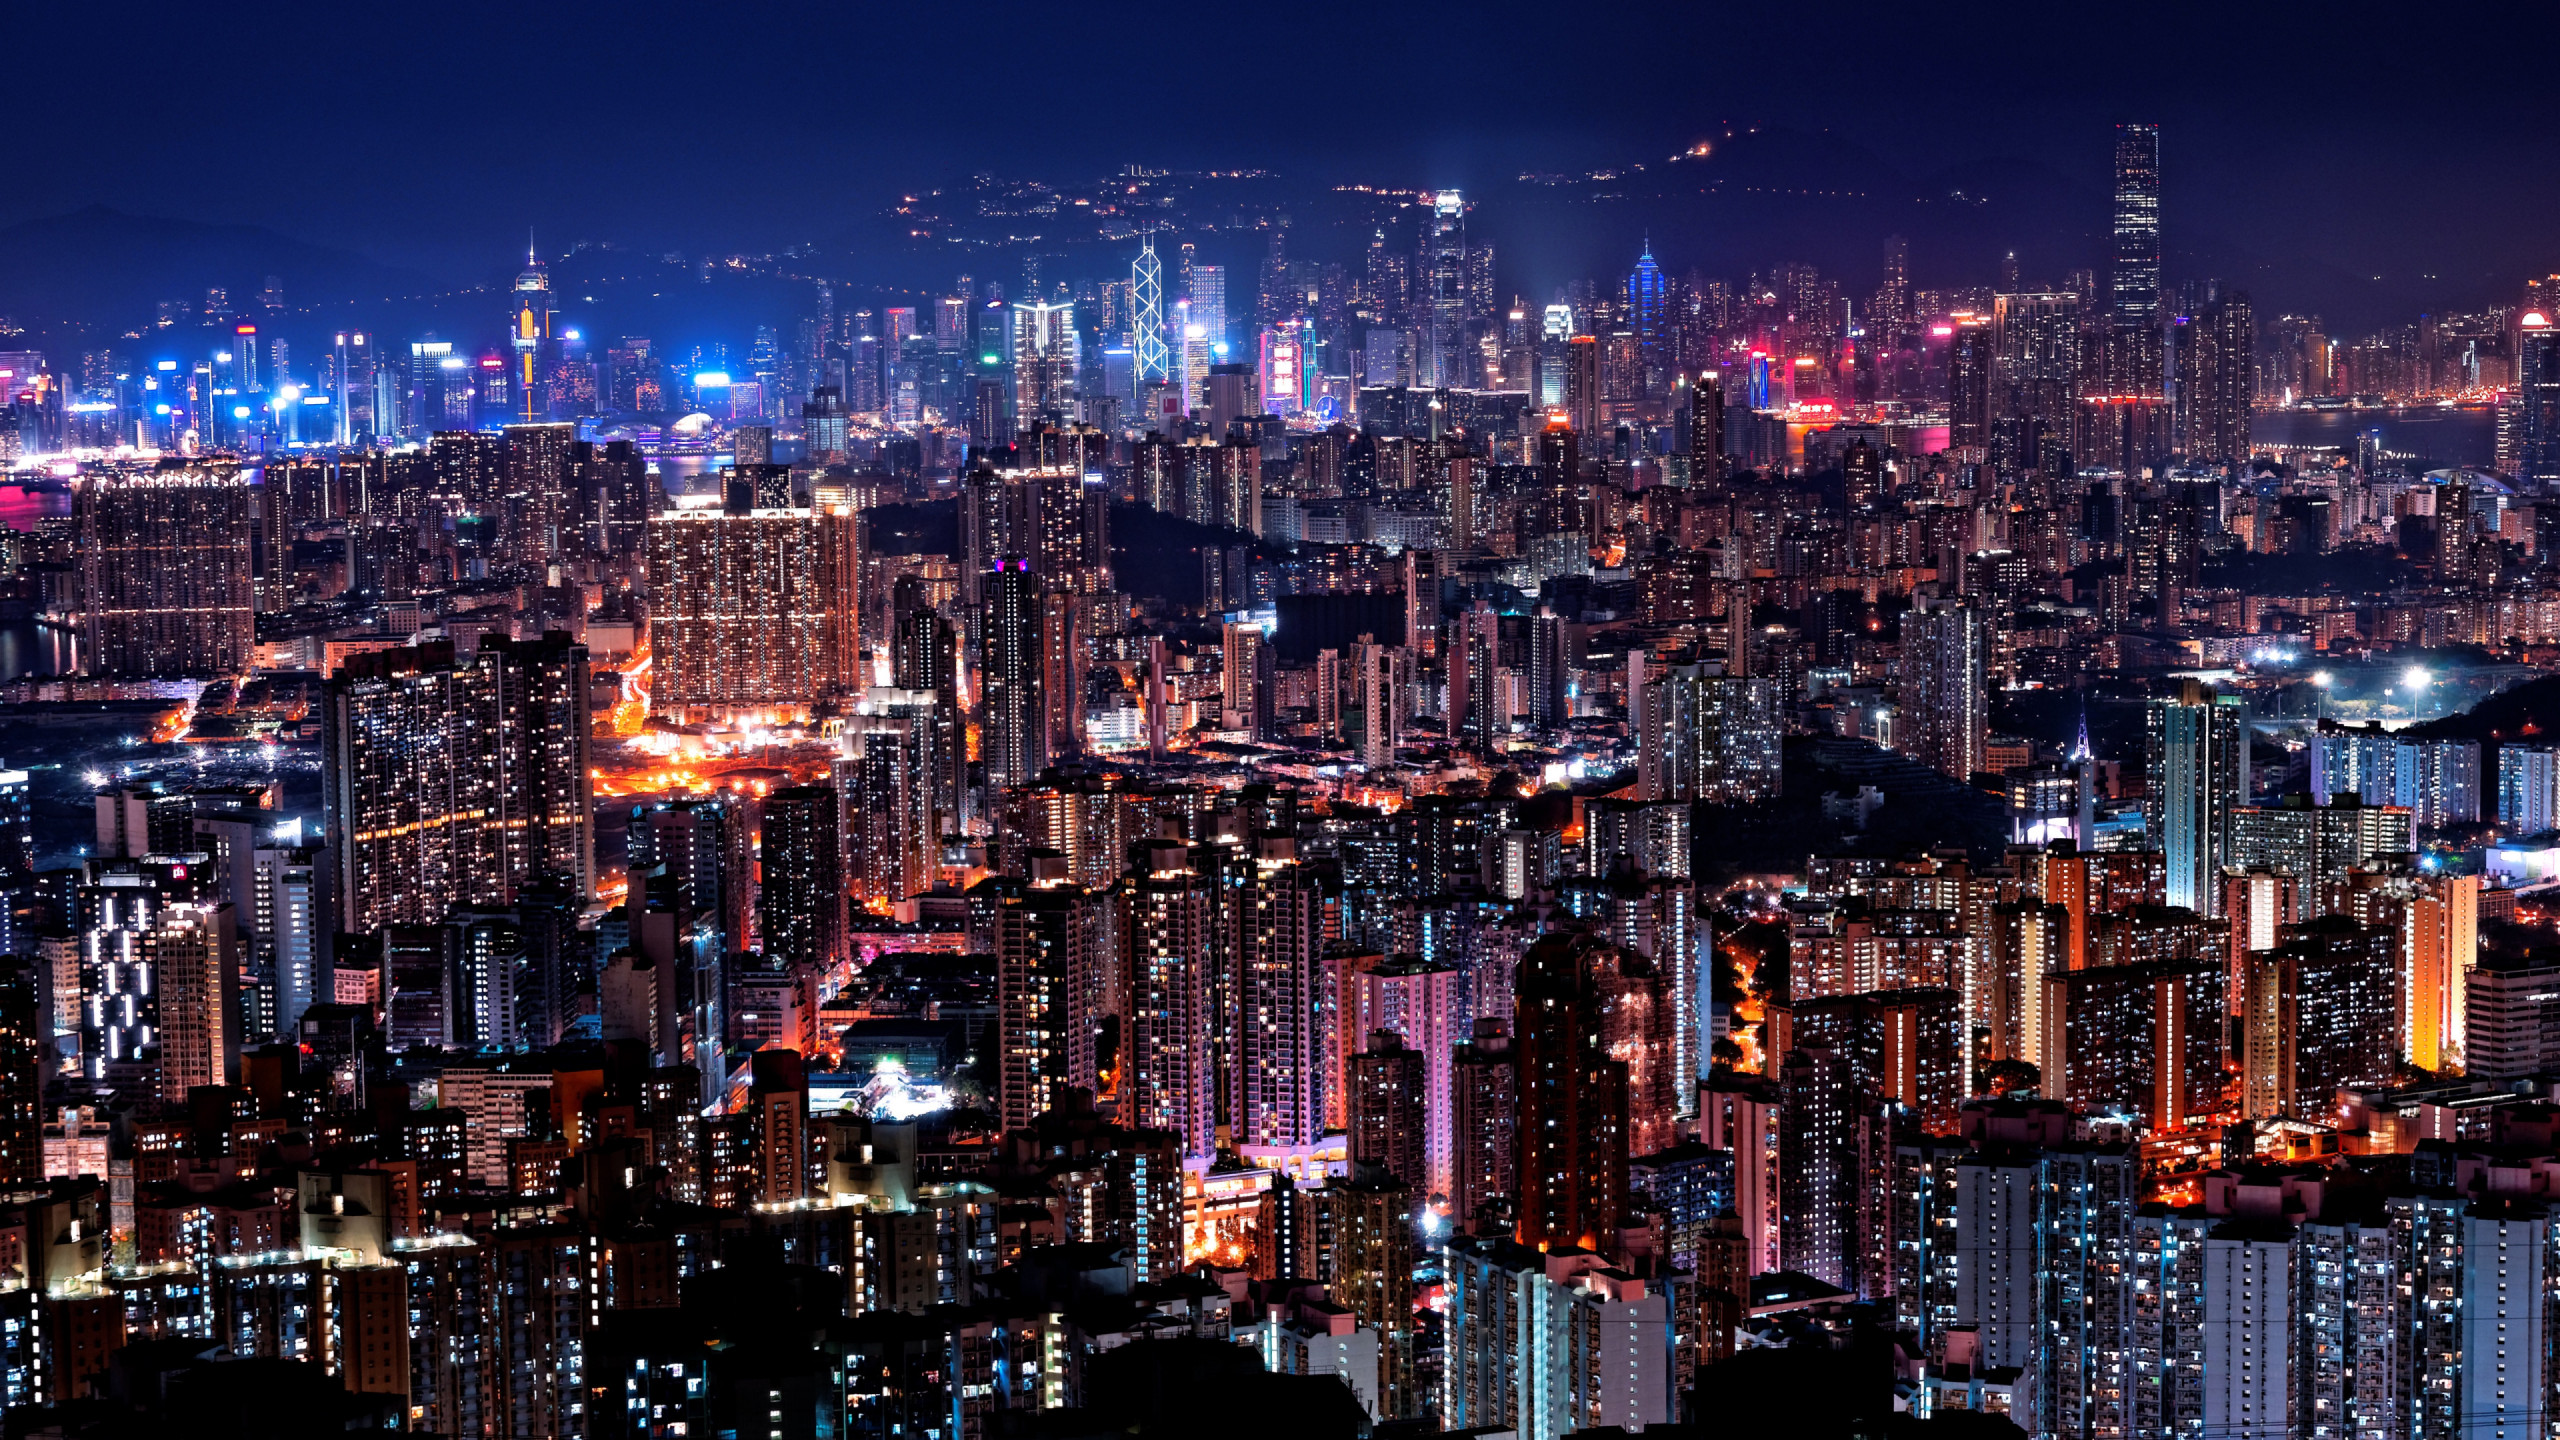 Hong Kong night lights wallpaper 2560x1440